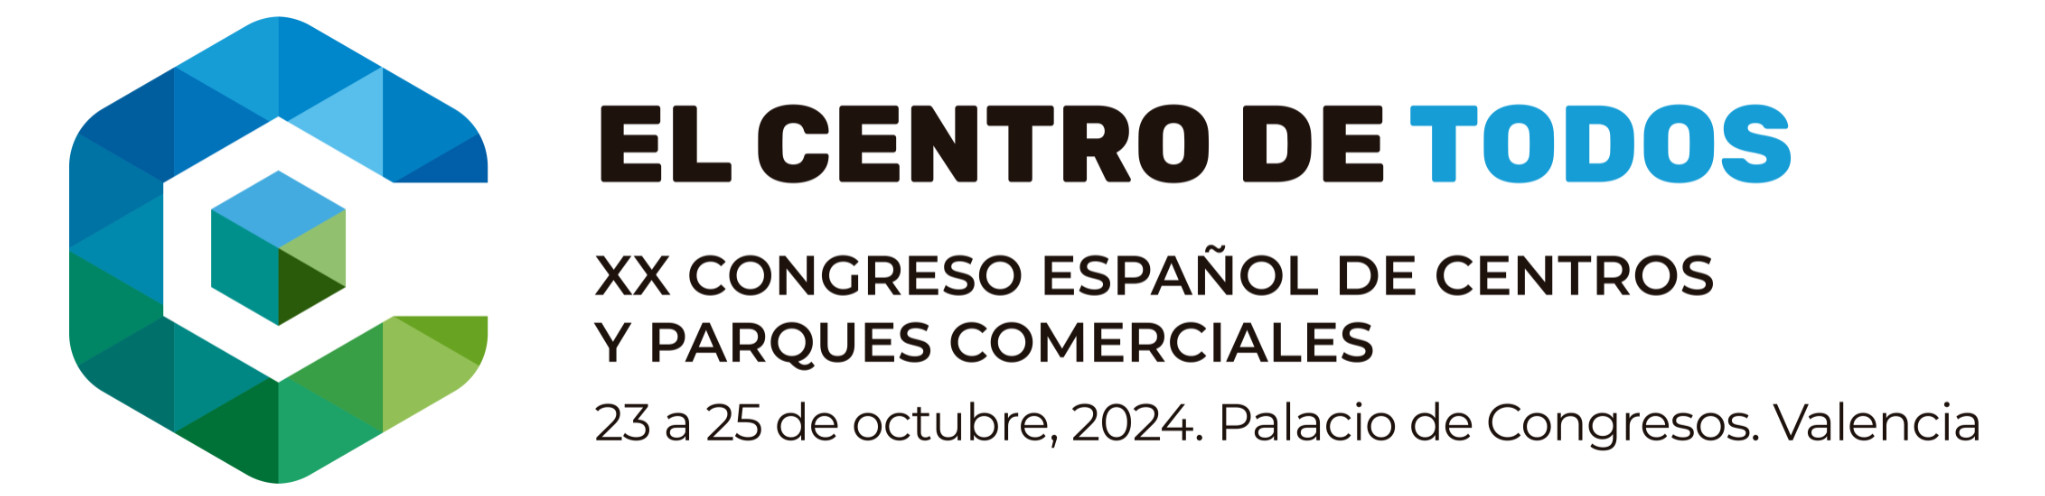 Logo de Congreso Español de Centros y Parques Comerciales